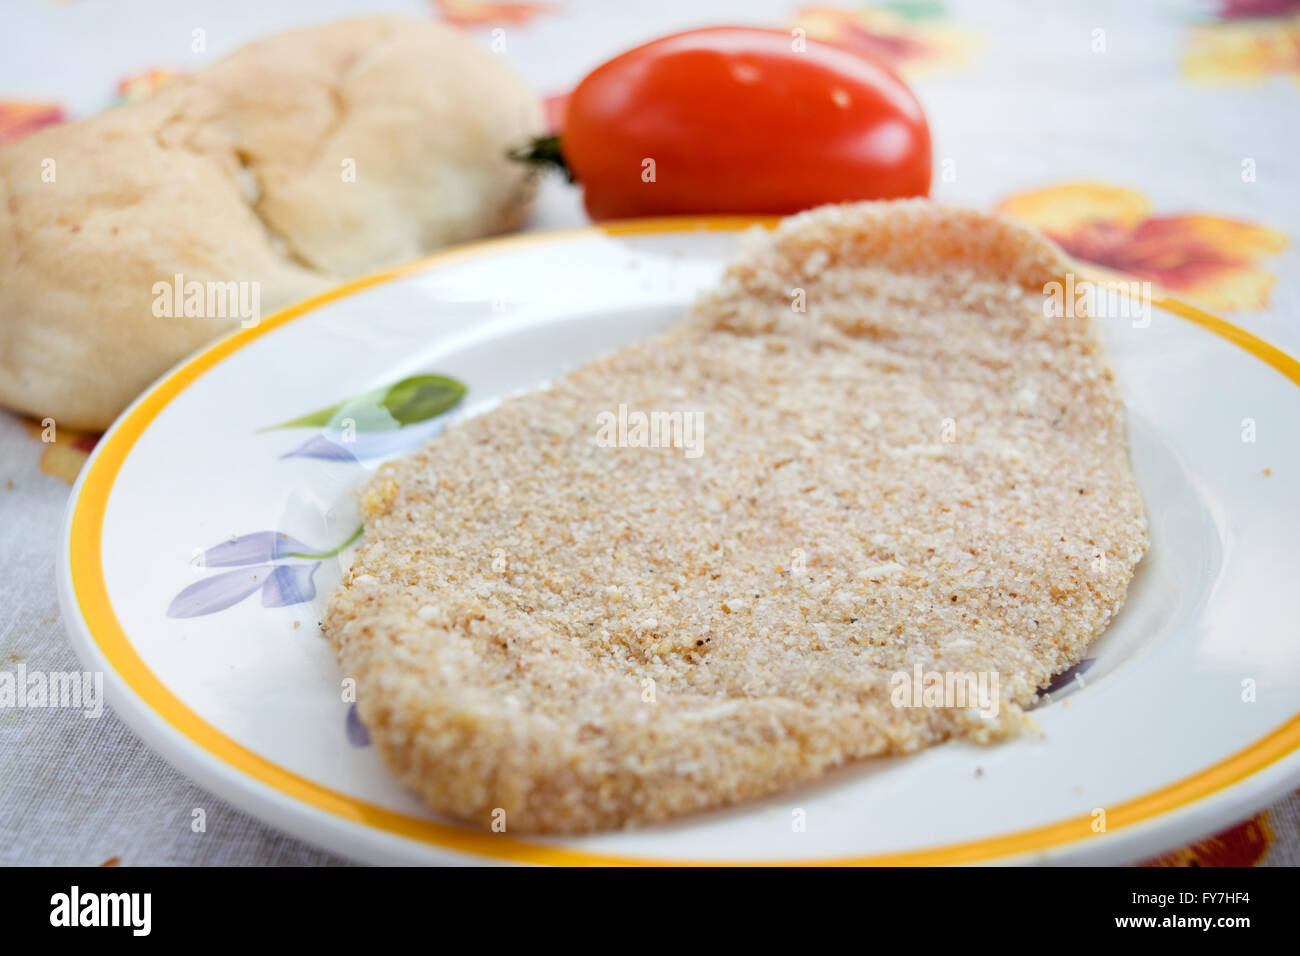 Escalope de veau non cuites avec un morceau de pain et tomates fraîches Banque D'Images